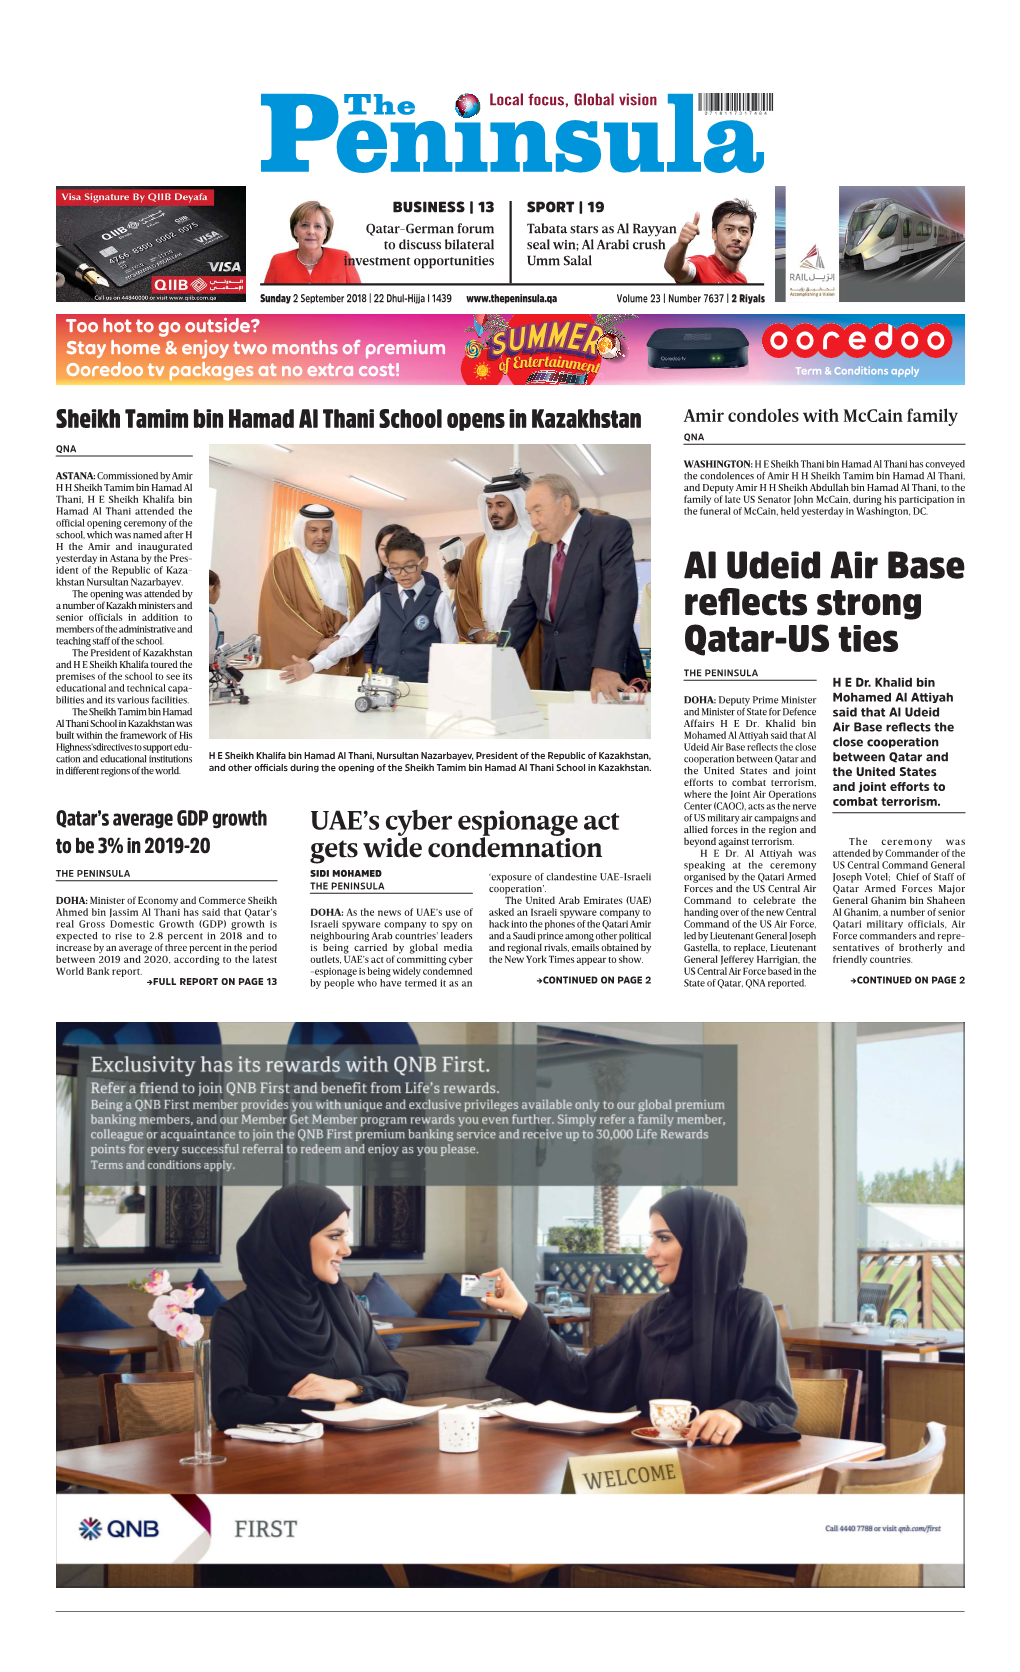 Al Udeid Air Base Reflects Strong Qatar-US Ties